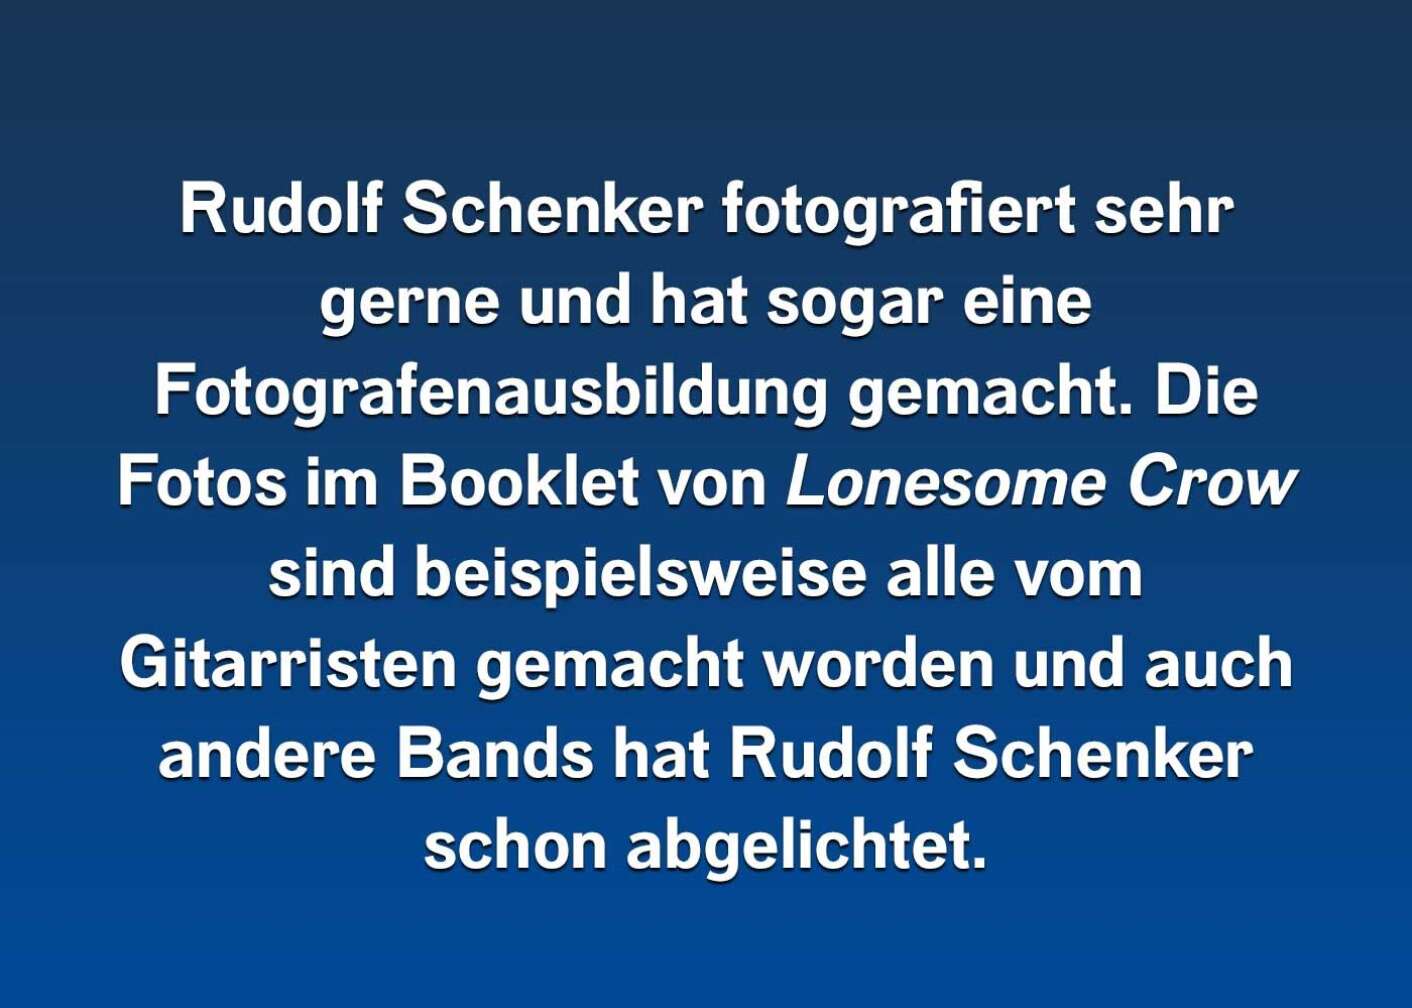 6 Fakten über Rudolf Schenker